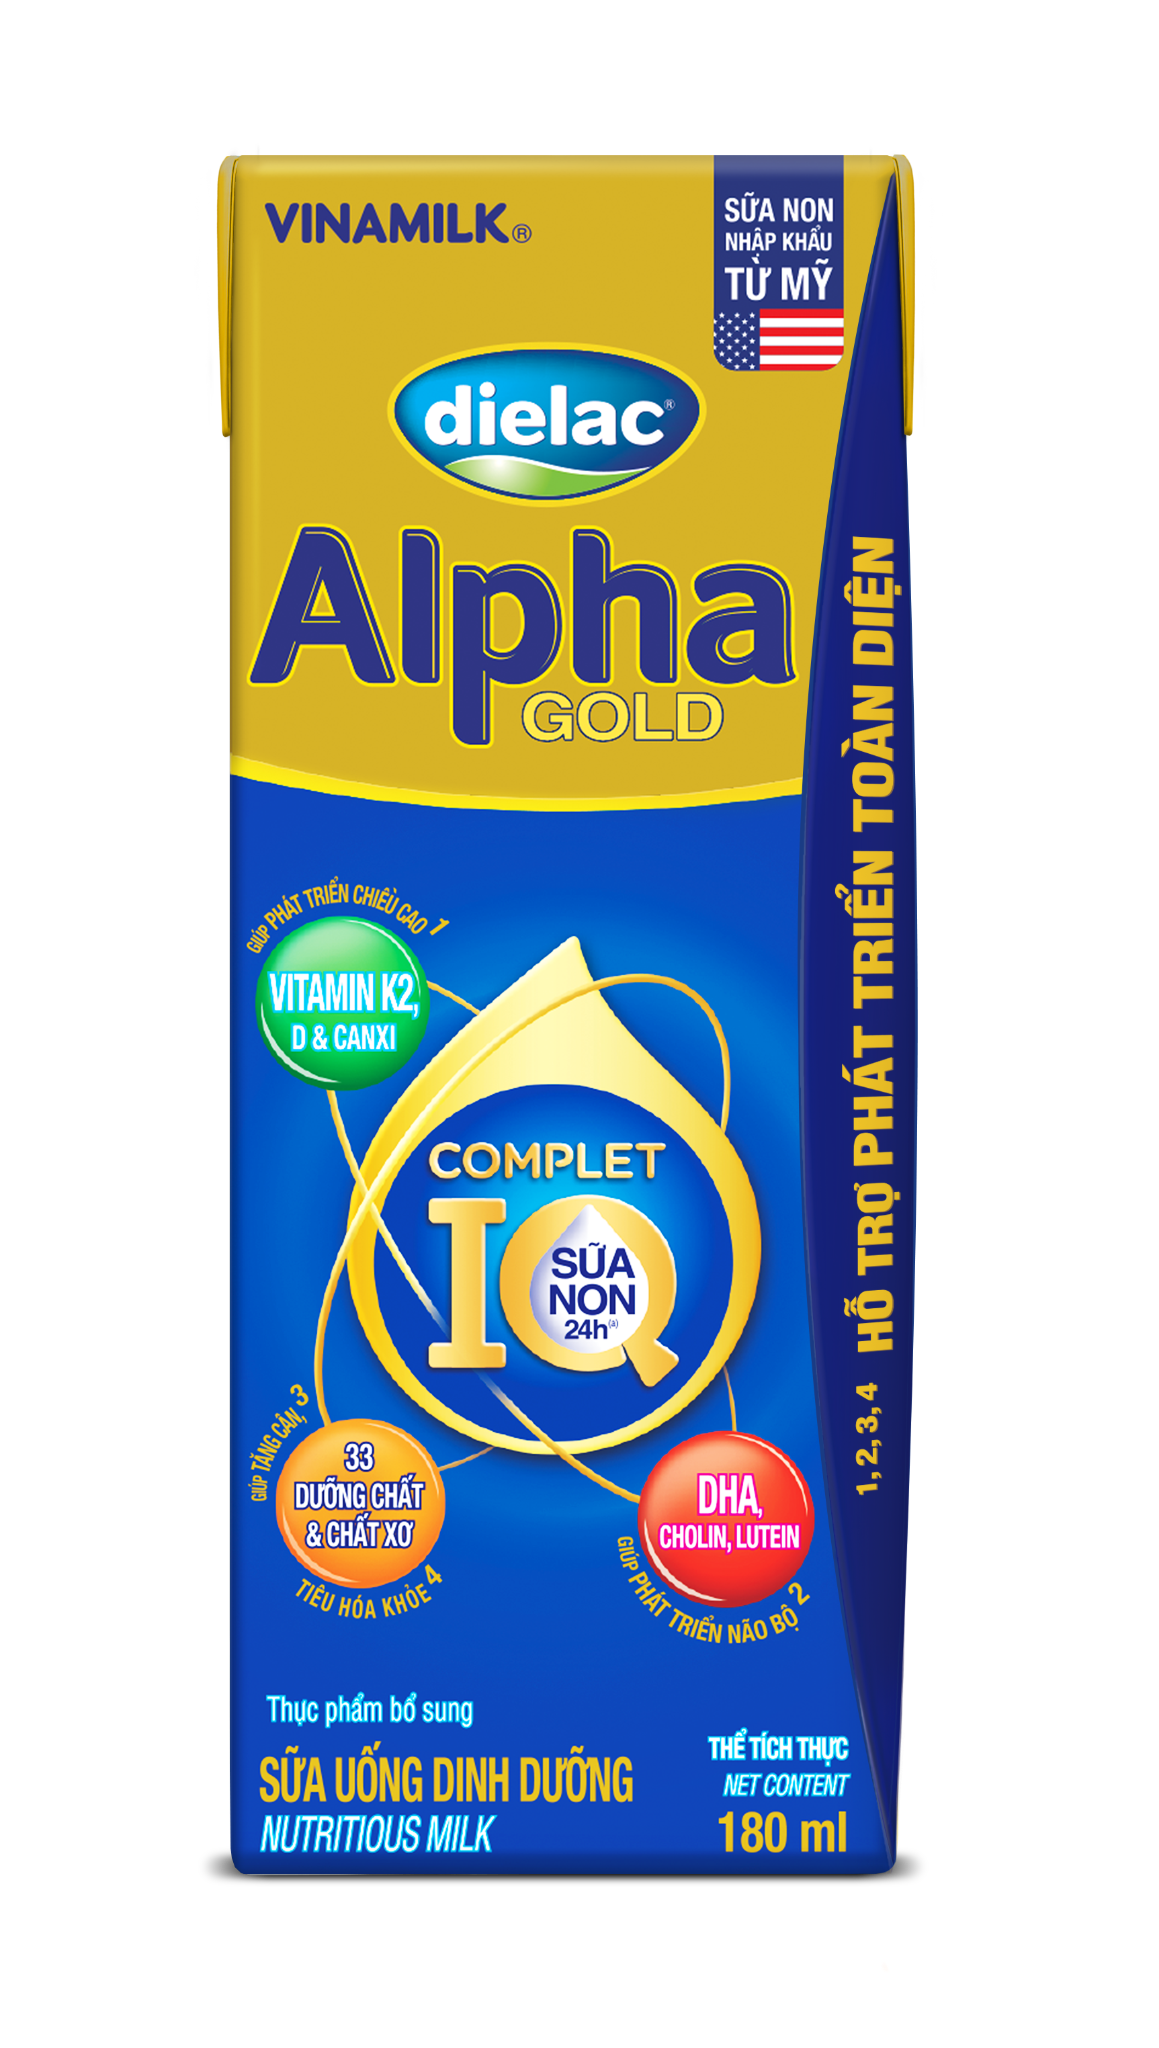 Sữa Uống Dinh Dưỡng Dielac Alpha Gold (Sữa non) - Lốc 4 hộp 180ml